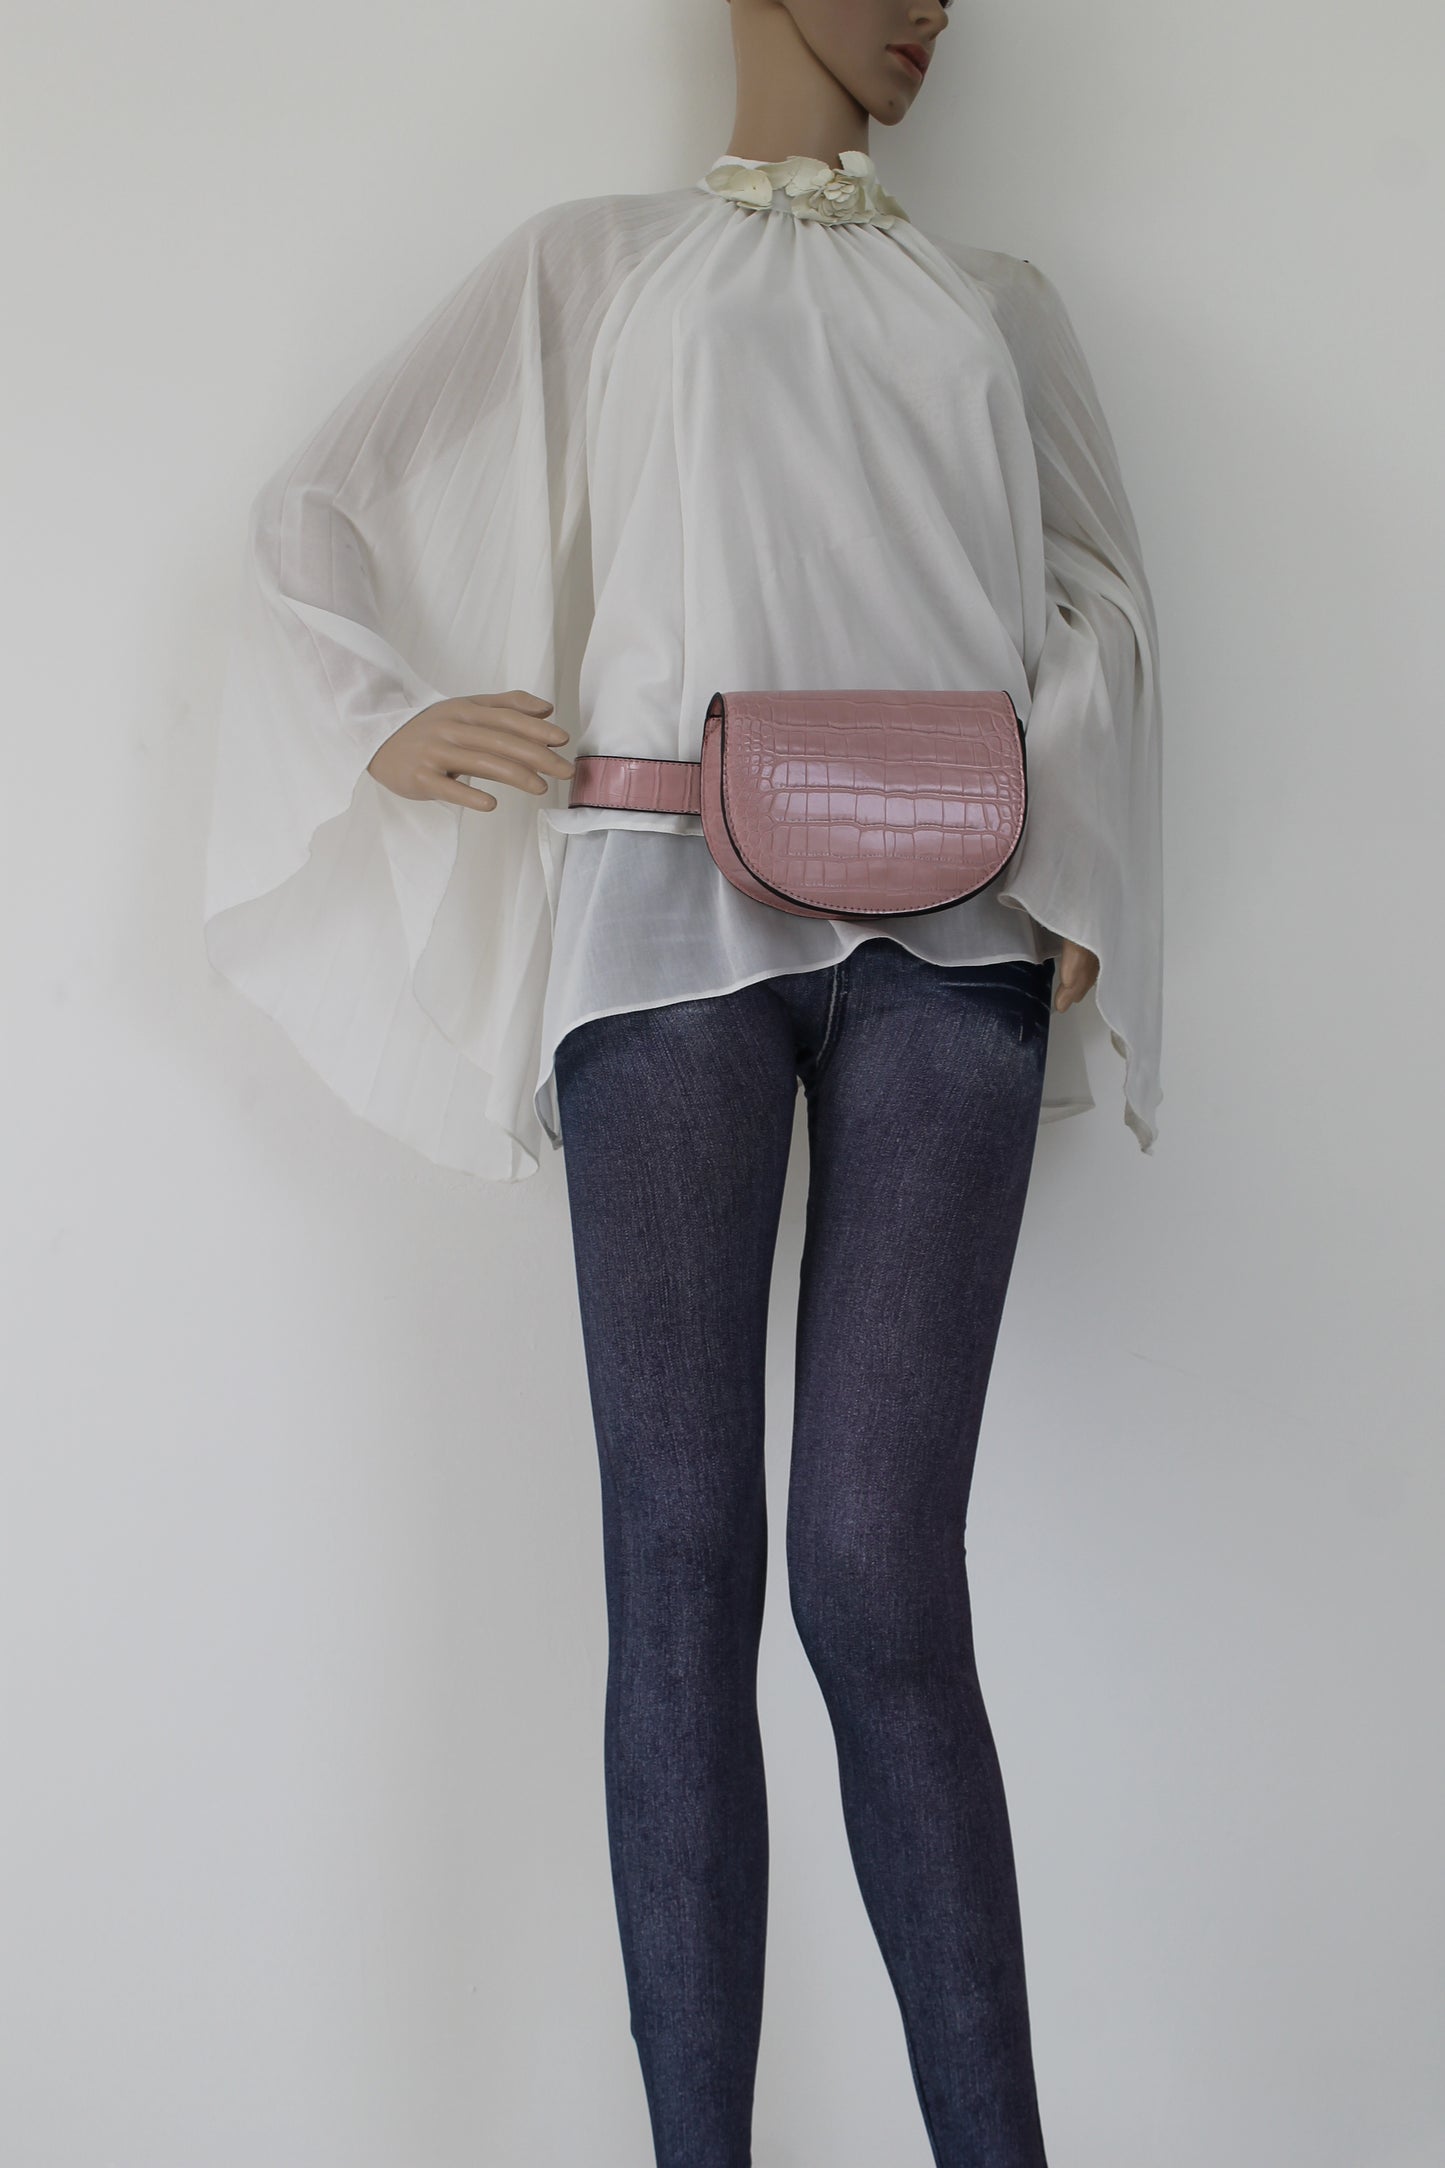 Aminah Faux Leather Snakeskin effect Belt Bag Pink